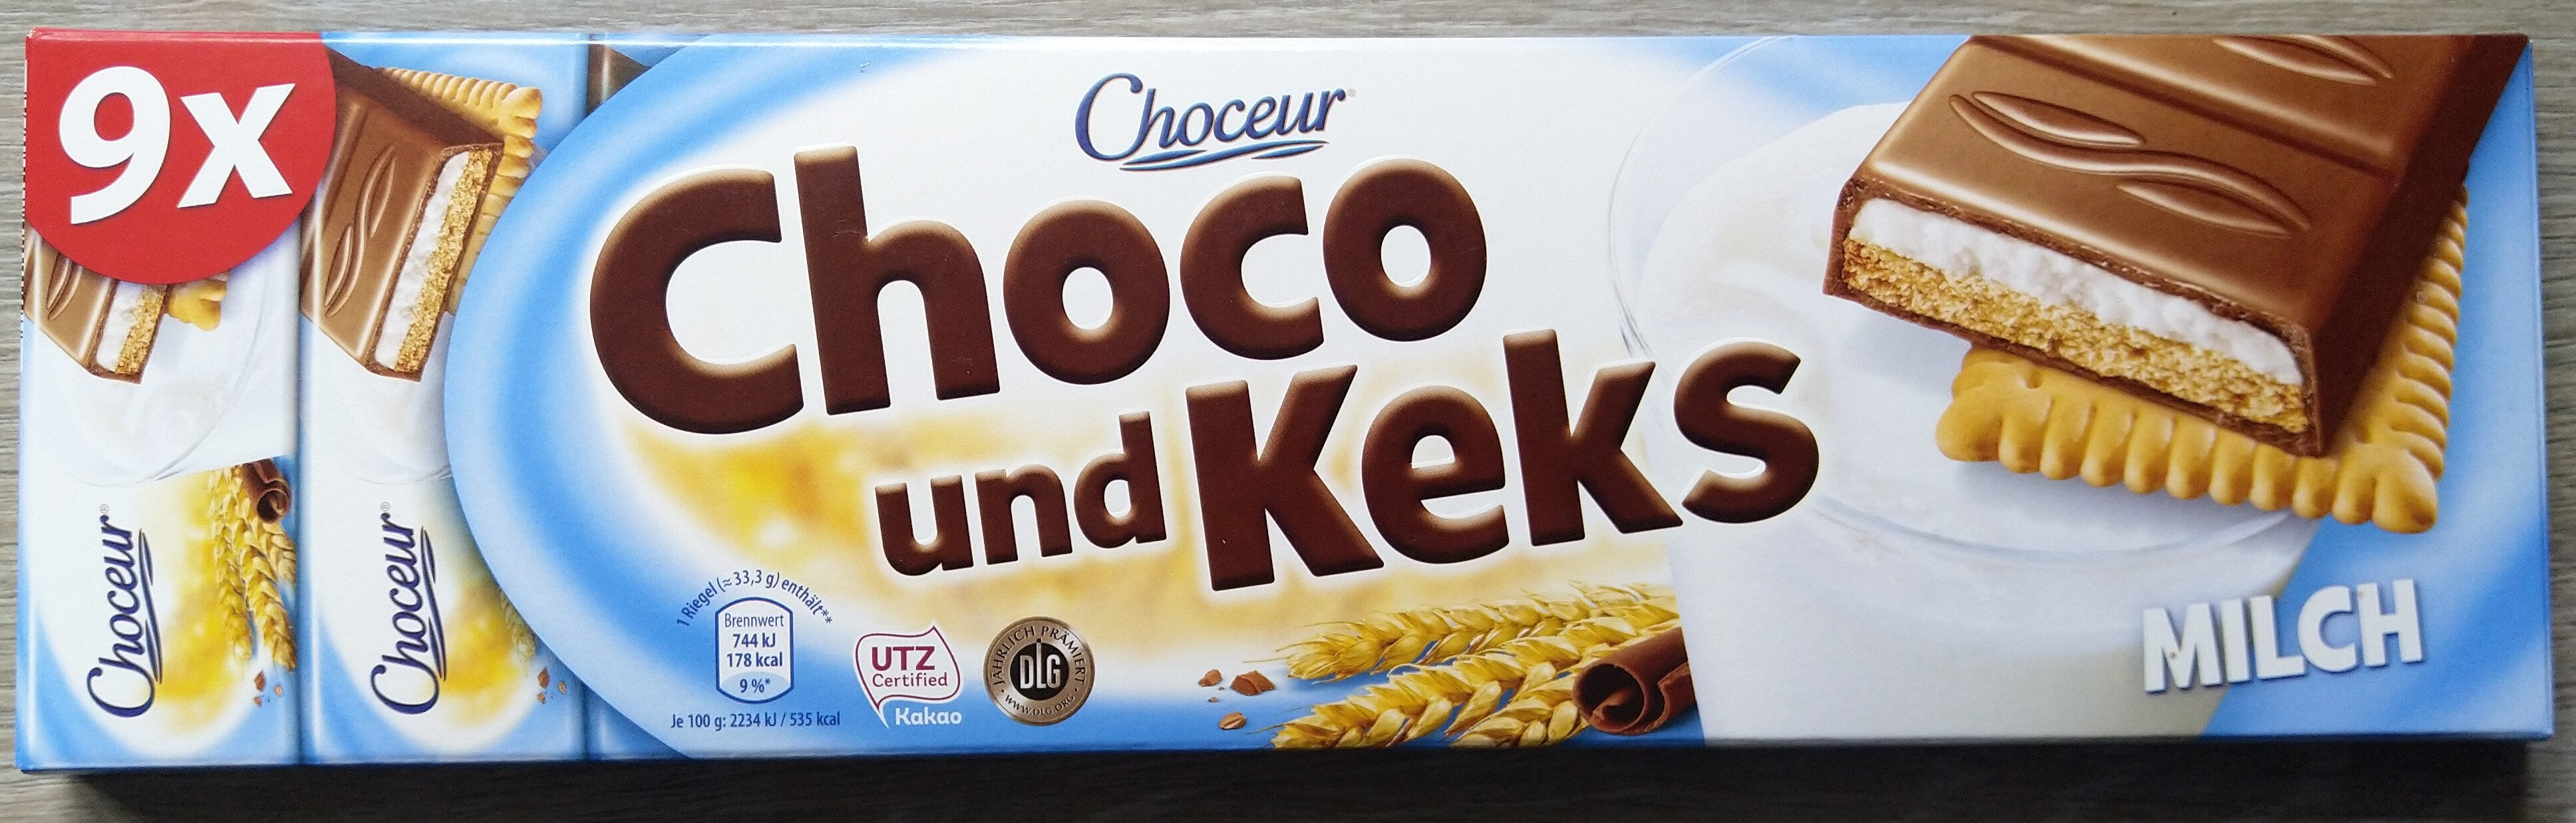 Choco und Keks Milch - Prodotto - de